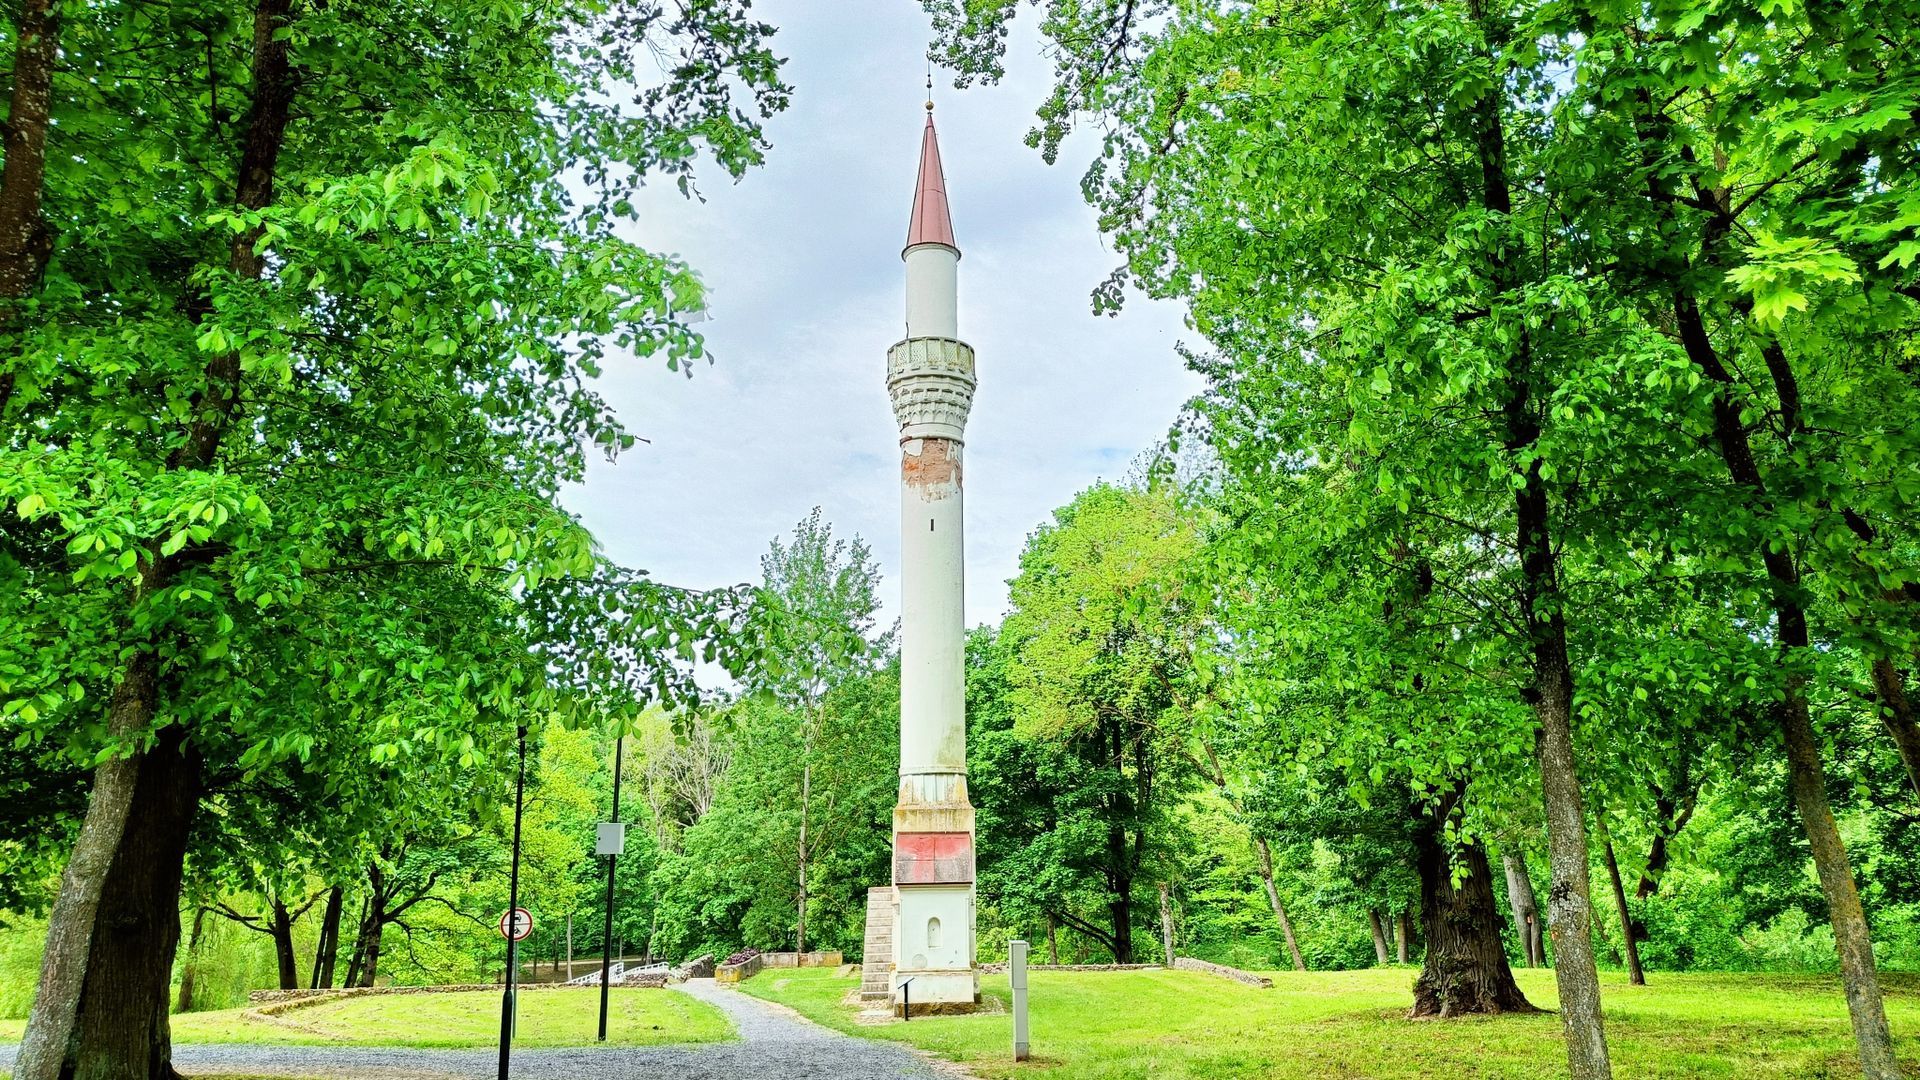 Kėdainiai Minaret